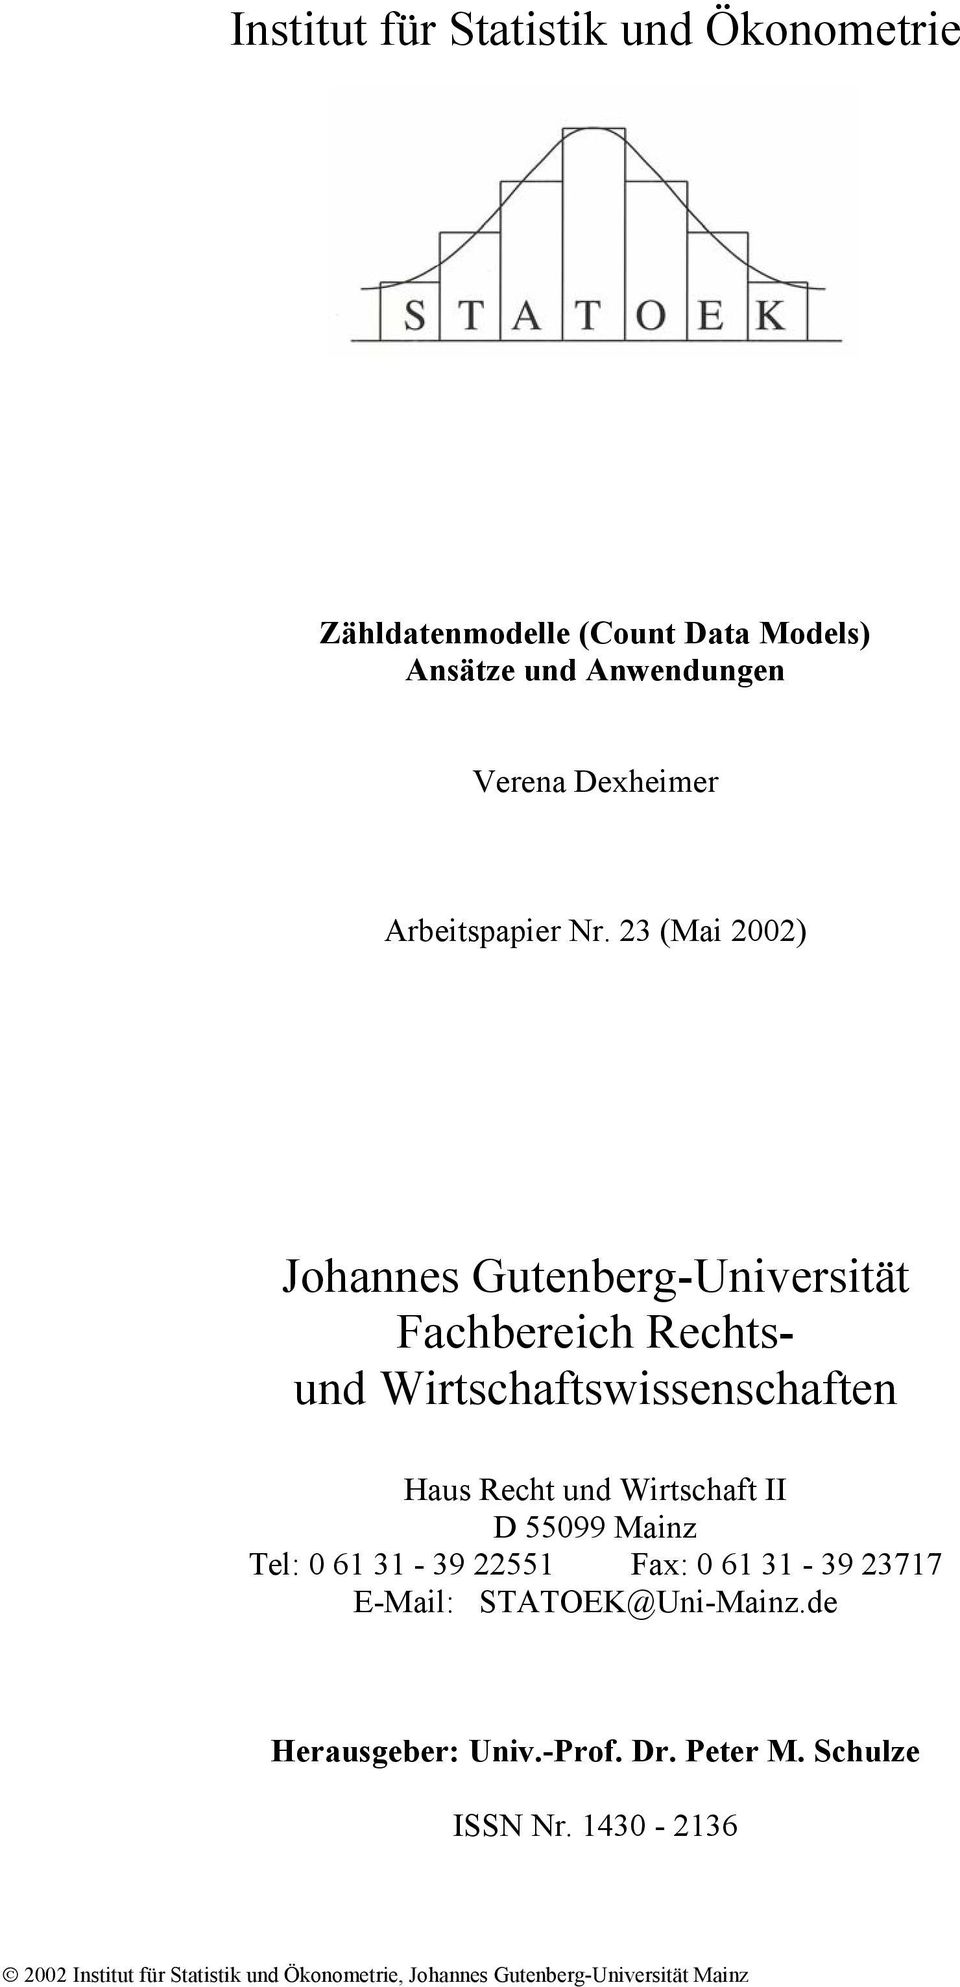 3 (Ma 00) Johaes Guteberg-Uverstät Fachberech Rechtsud Wrtschaftswsseschafte Haus Recht ud Wrtschaft II